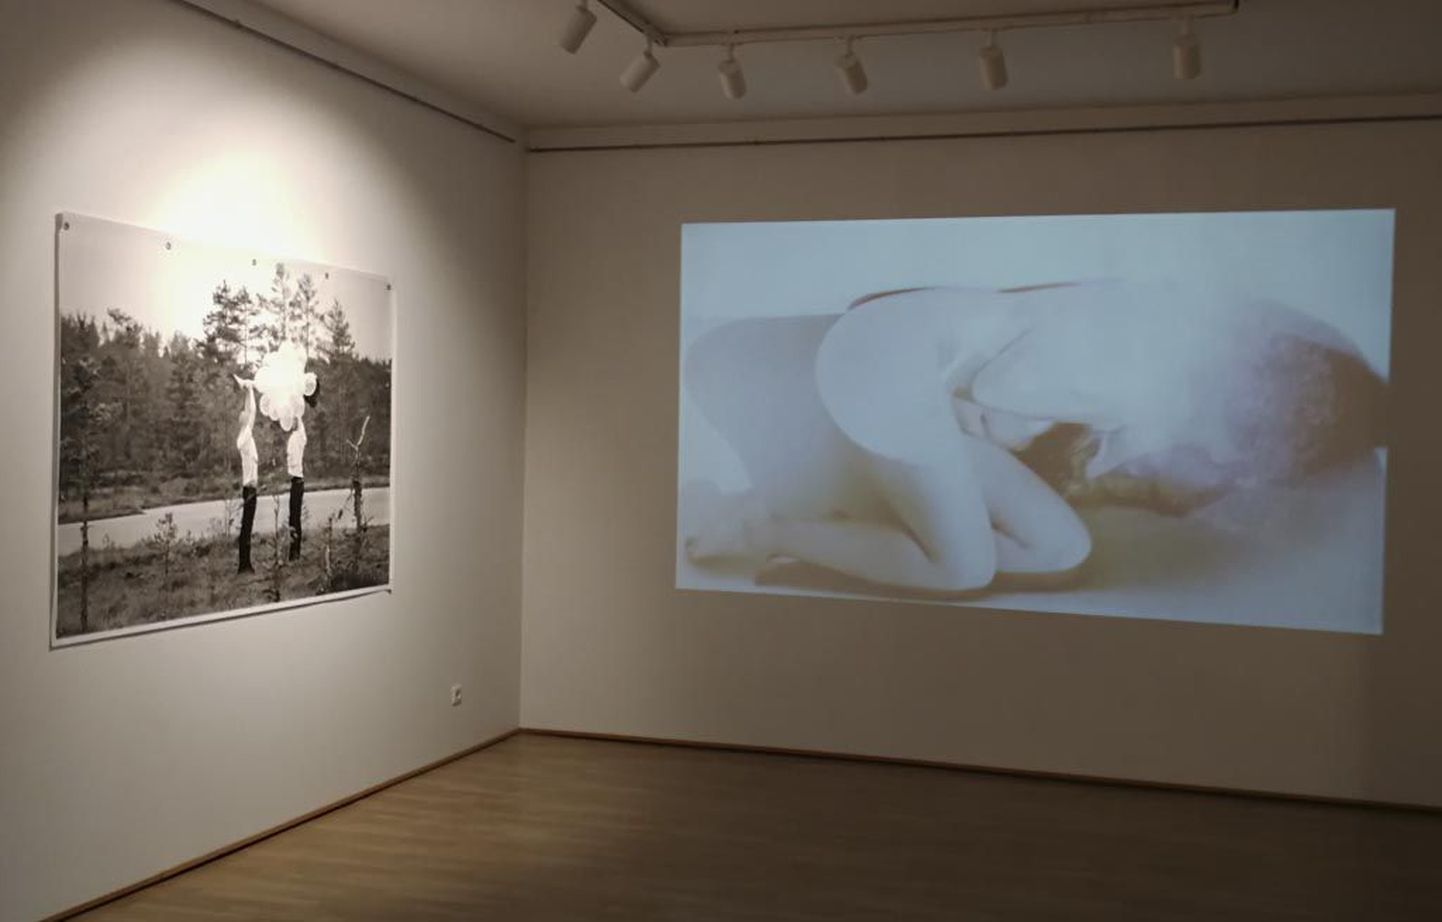 Mehhiko kunstniku Niña Yharedi näitusel „Via Baltic“ näidatakse performance’i fotojäädvustusi ning videoinstallatsiooni.